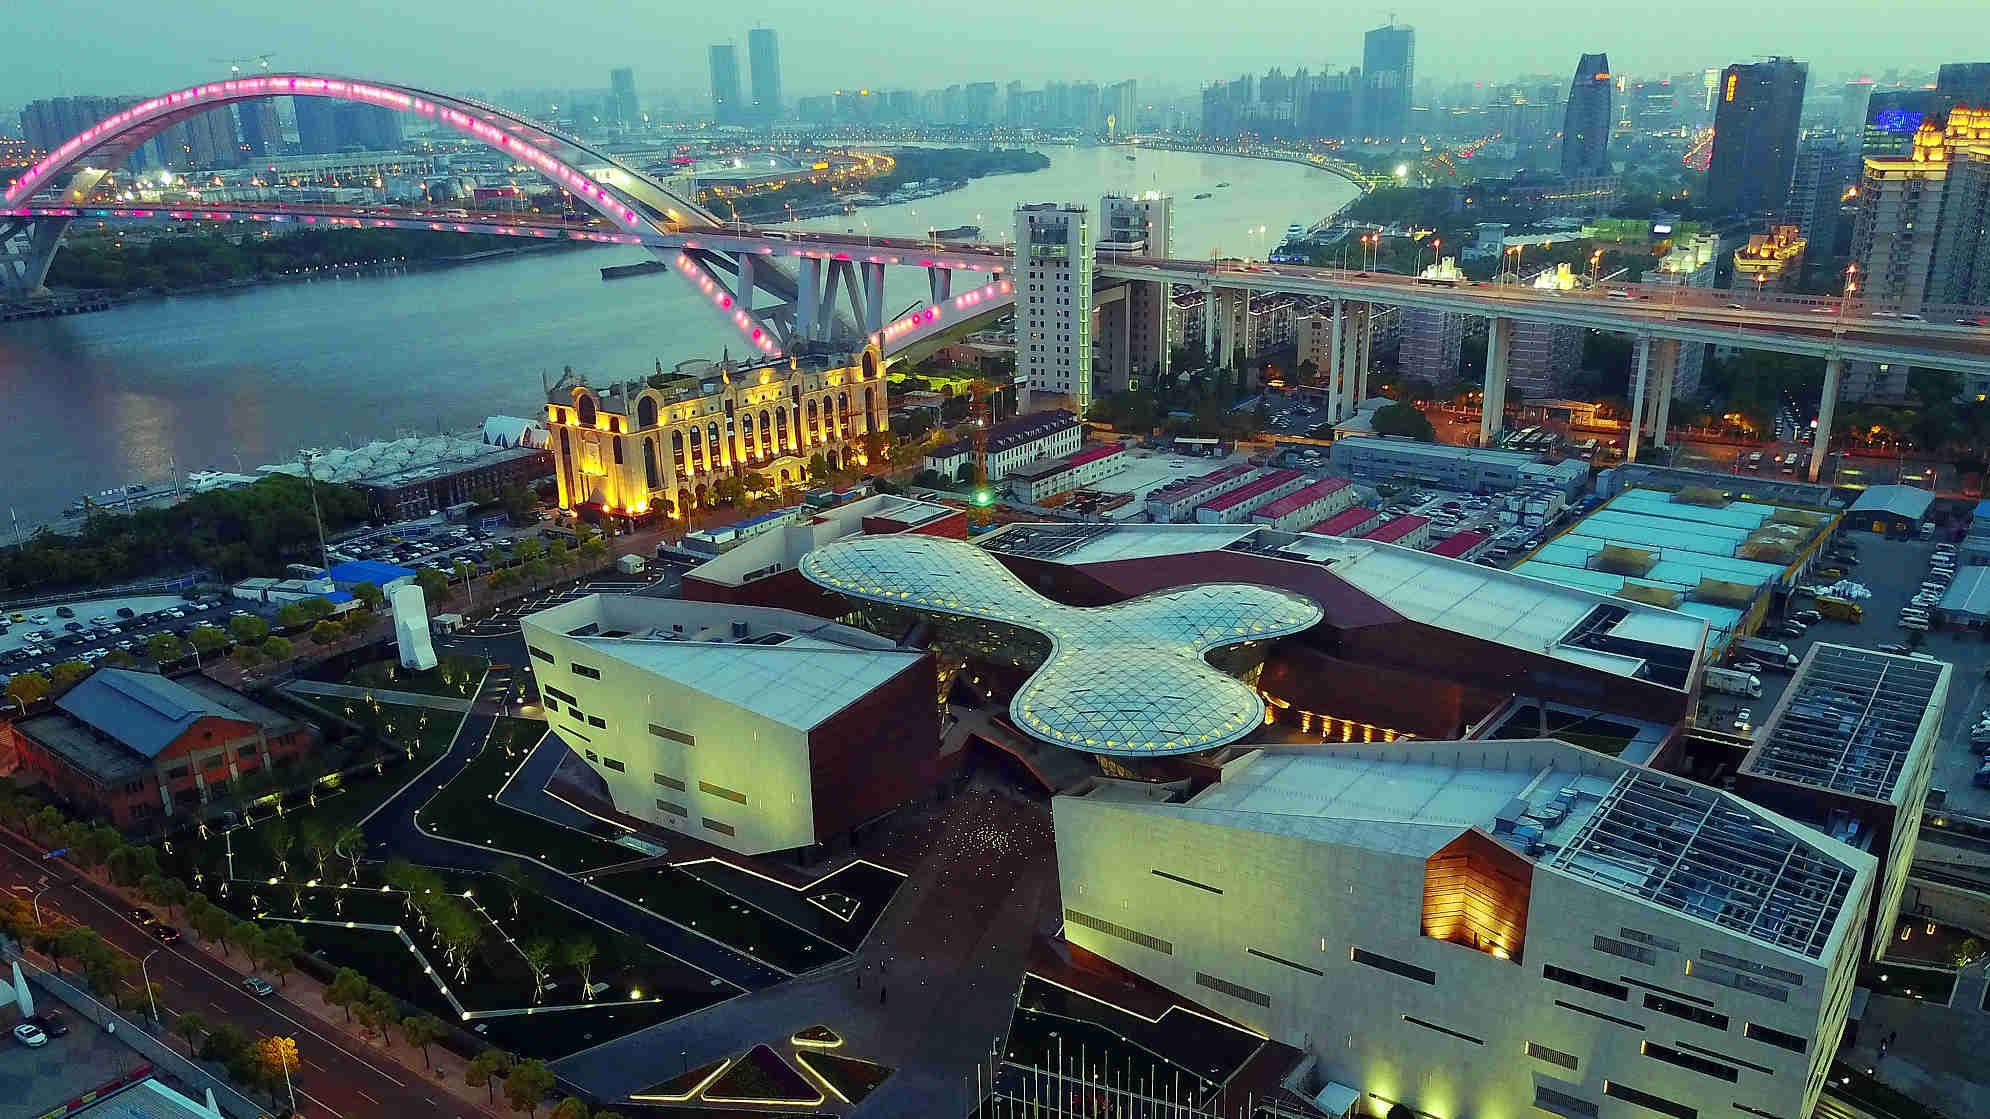 World Expo host city Shanghai opens stunning museum on world’s fairs CGTN